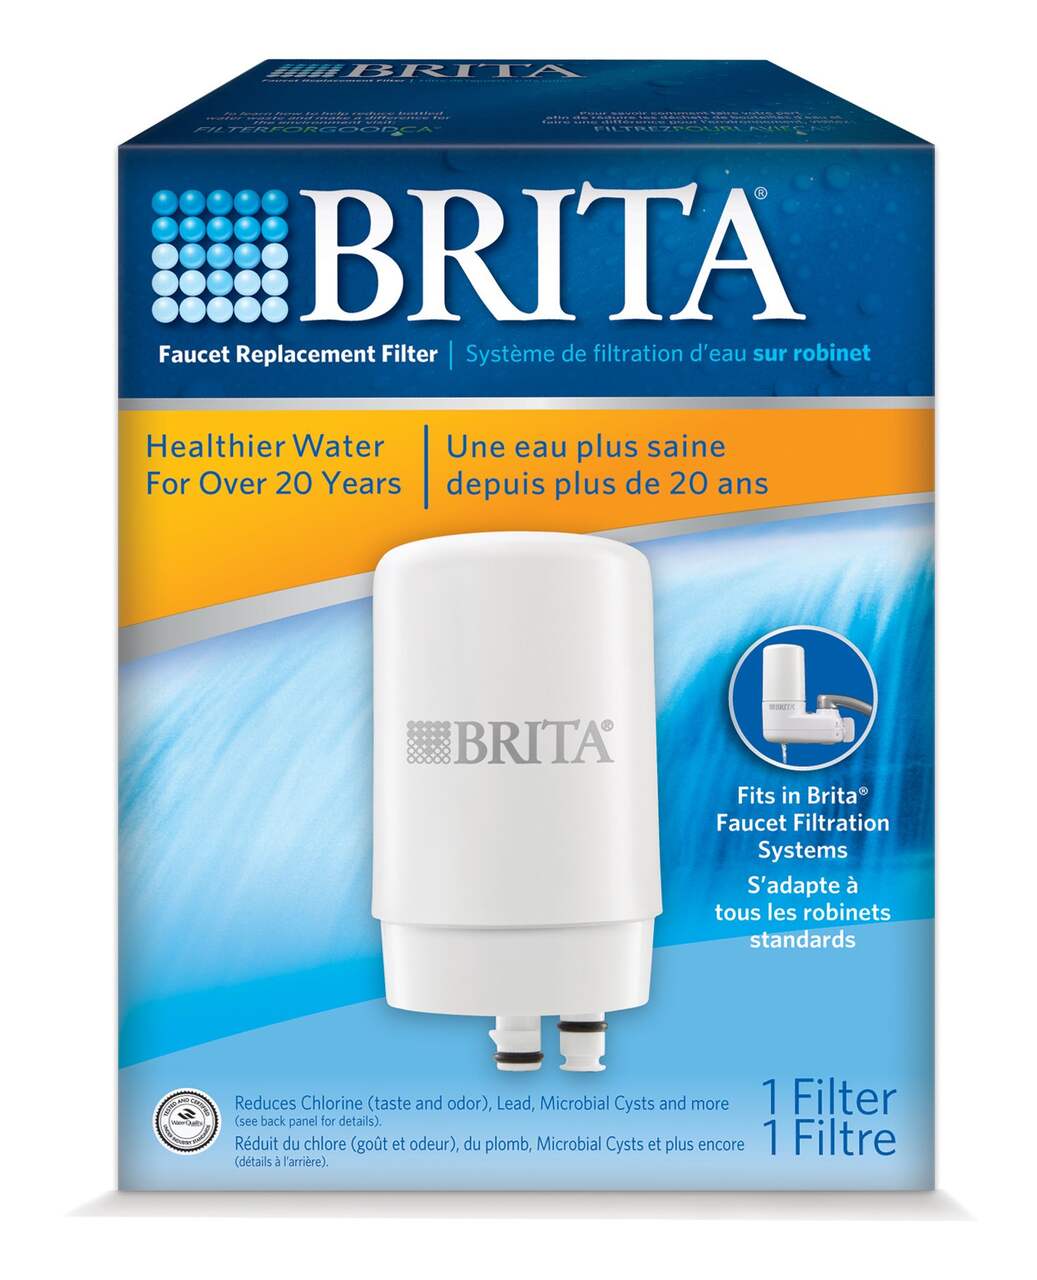 Filtre BRITA : tout savoir sur l'utilisation et le remplacement des filtres  : Femme Actuelle Le MAG